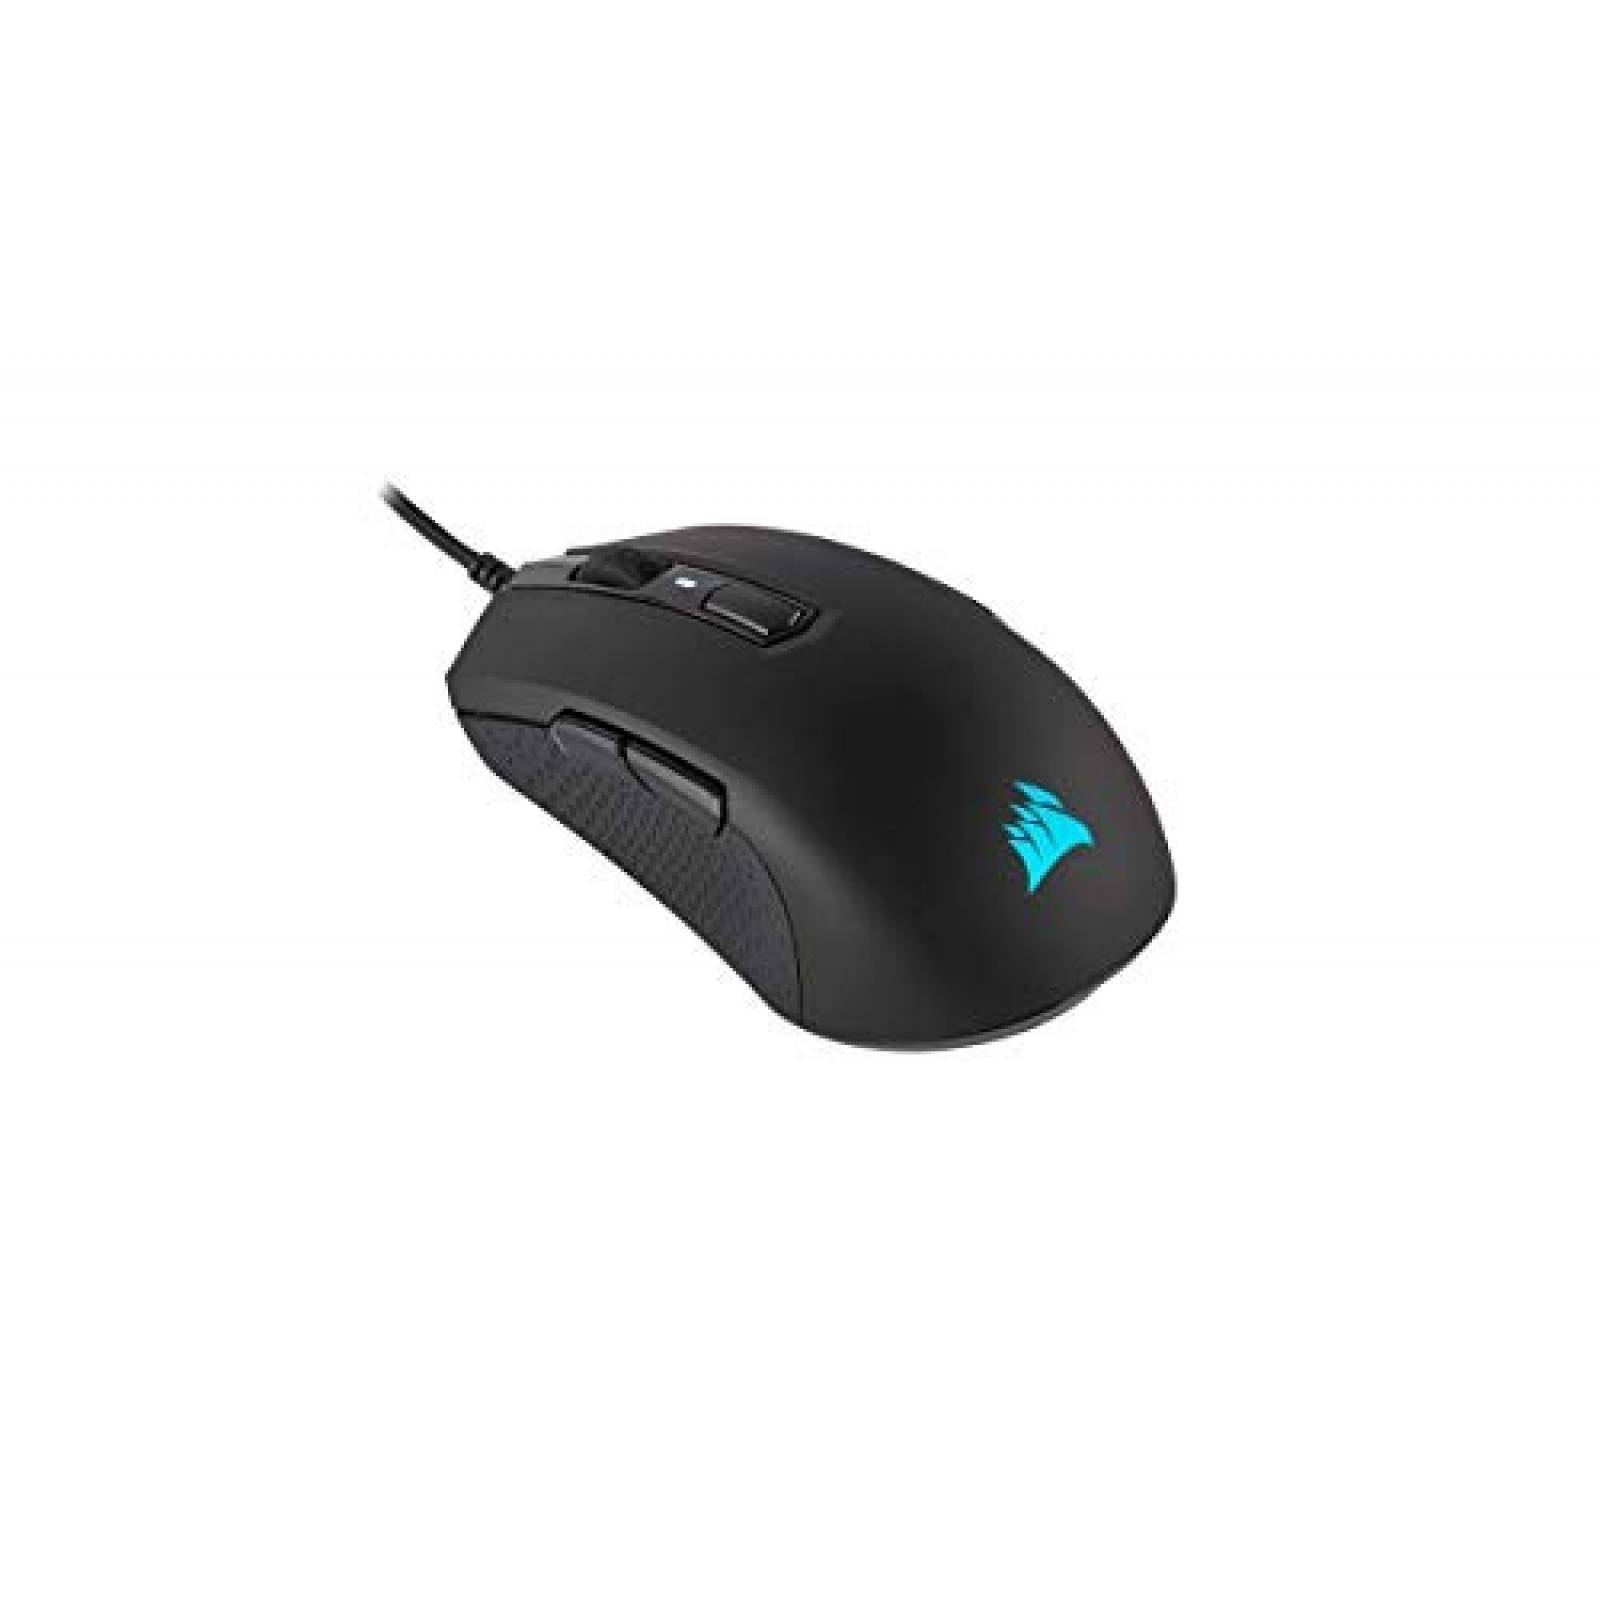 Mouse gamer Corsair M55 RGB Pro 12,400 DPI ajustable -Negro